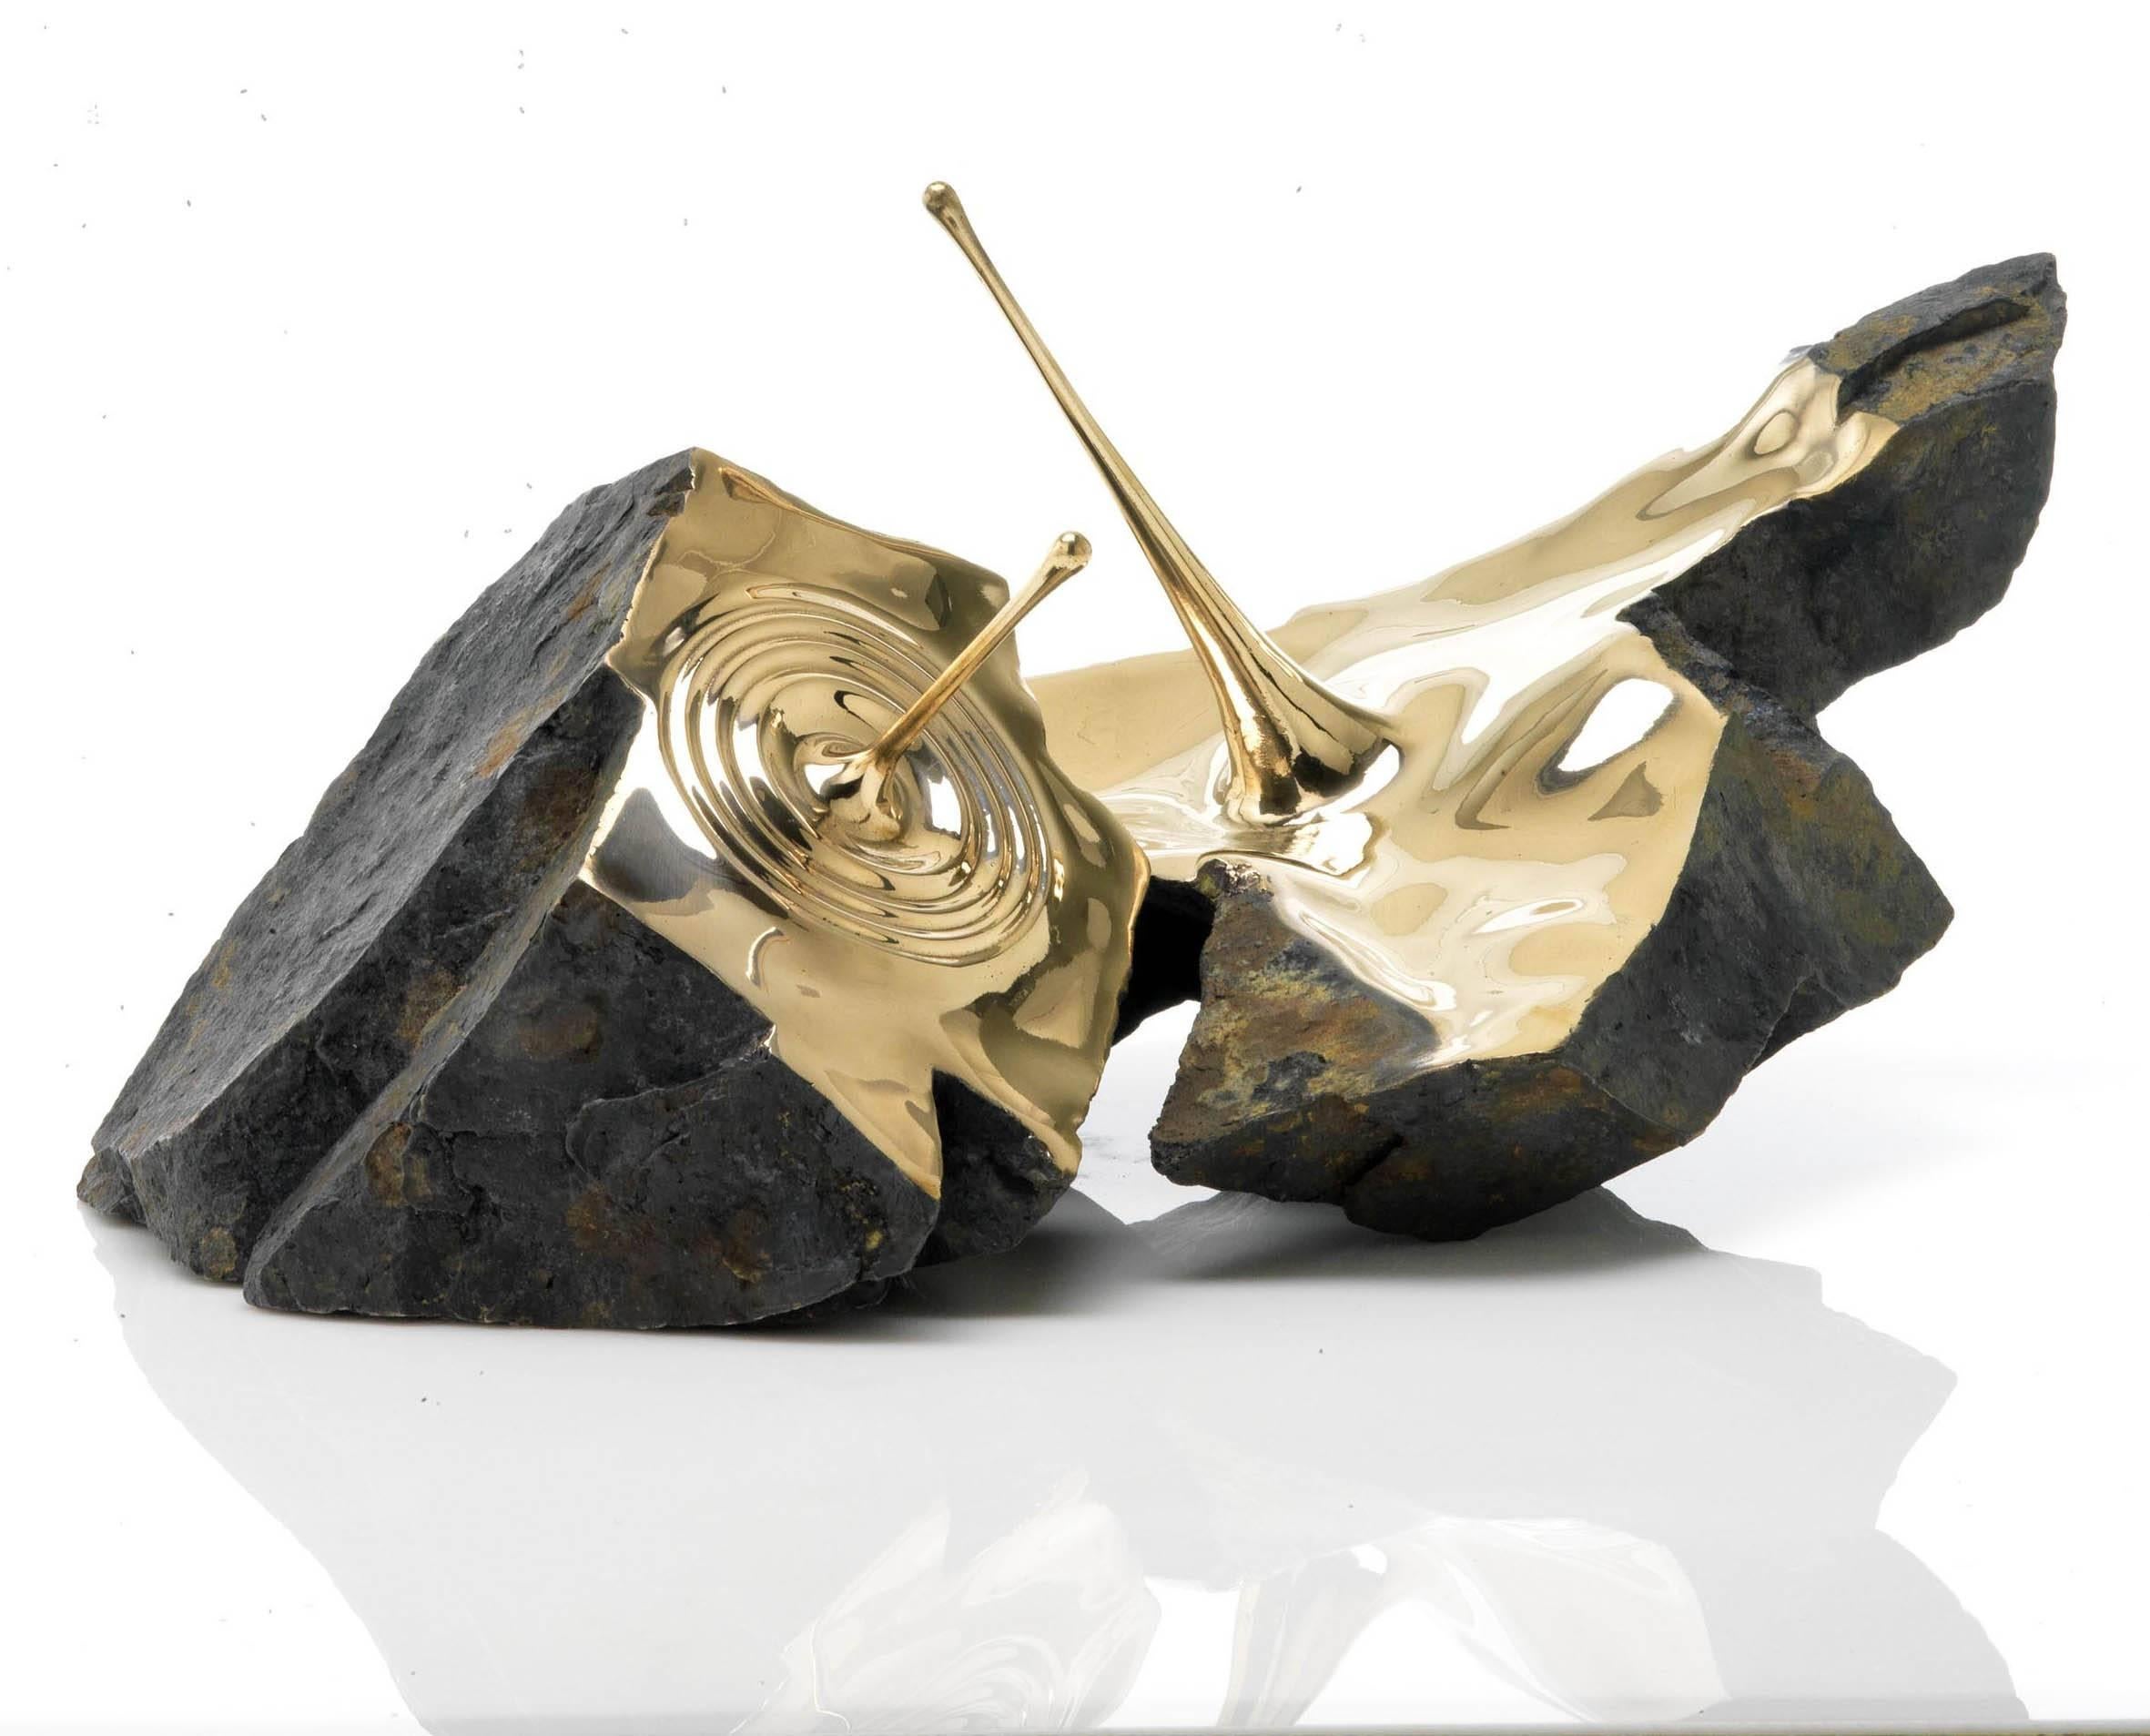 Resonance II des zeitgenössischen französischen Künstlers Romain Langlois. 
58 × 72.5 × 67.6 cm
Bronzeskulptur, limitierte Auflage von 8 & 4 A.P. Innen aus polierter Bronze, außen aus brünierter Bronze in Form eines Findlings.
In dieser